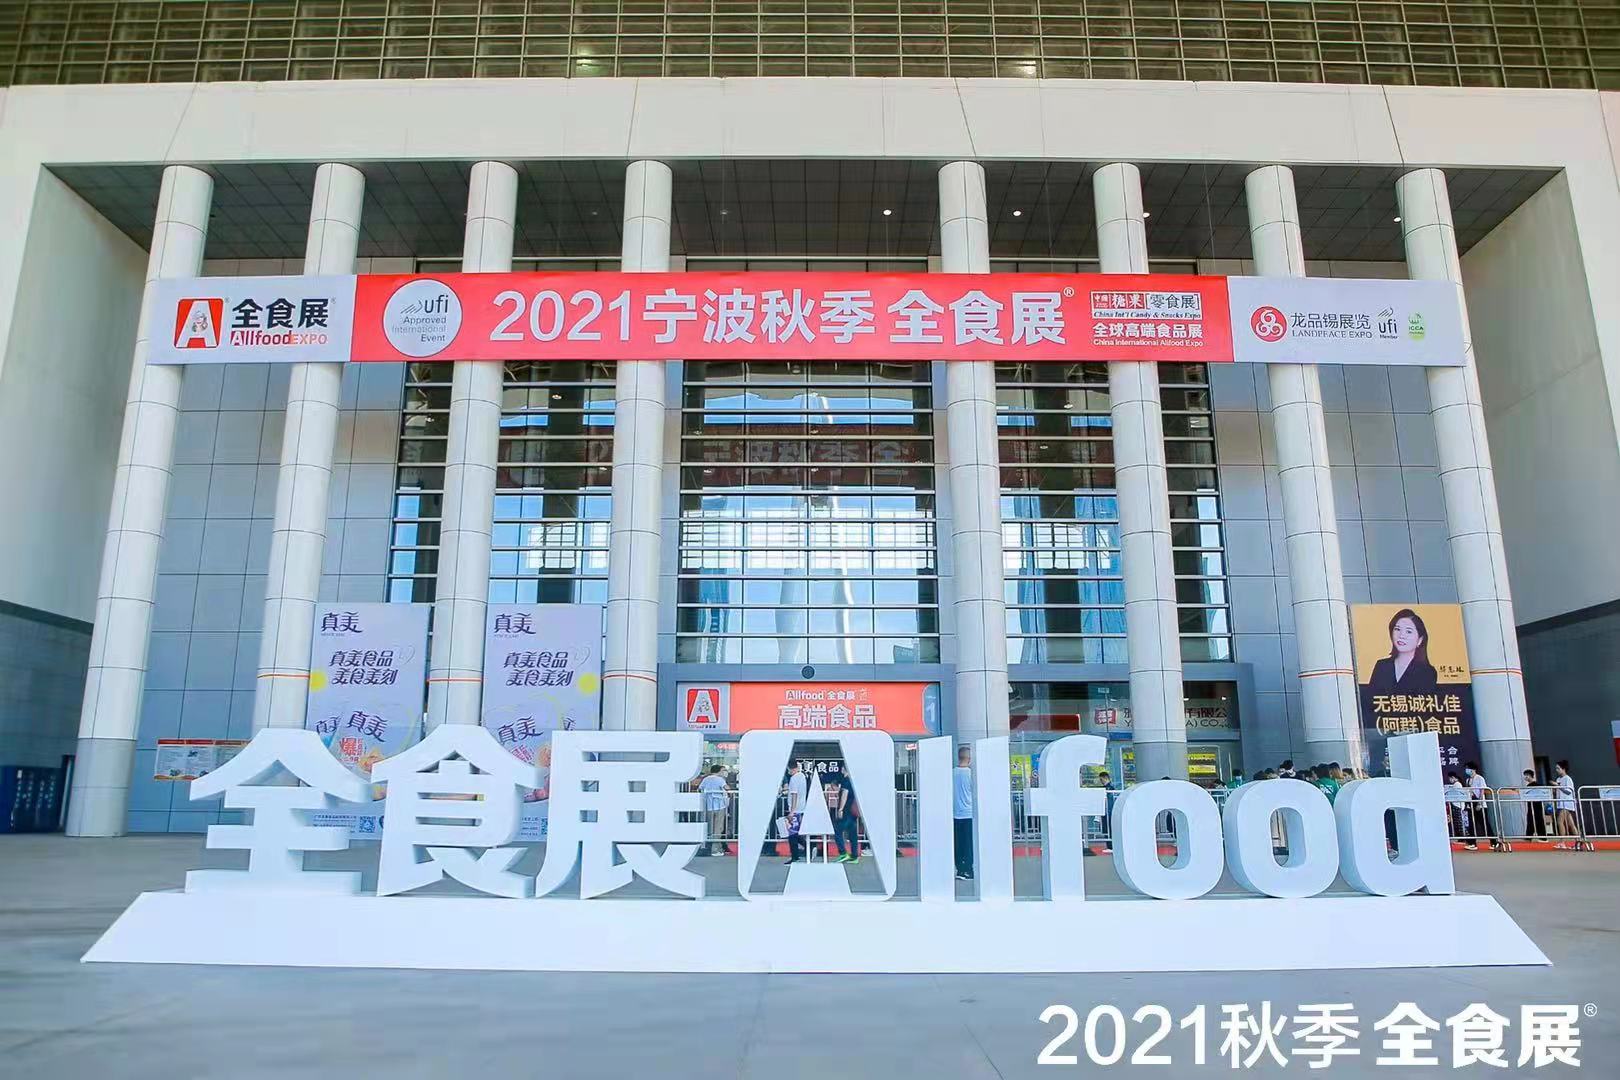 2021秋季全食展9月26日在宁波举行 开幕即爆棚